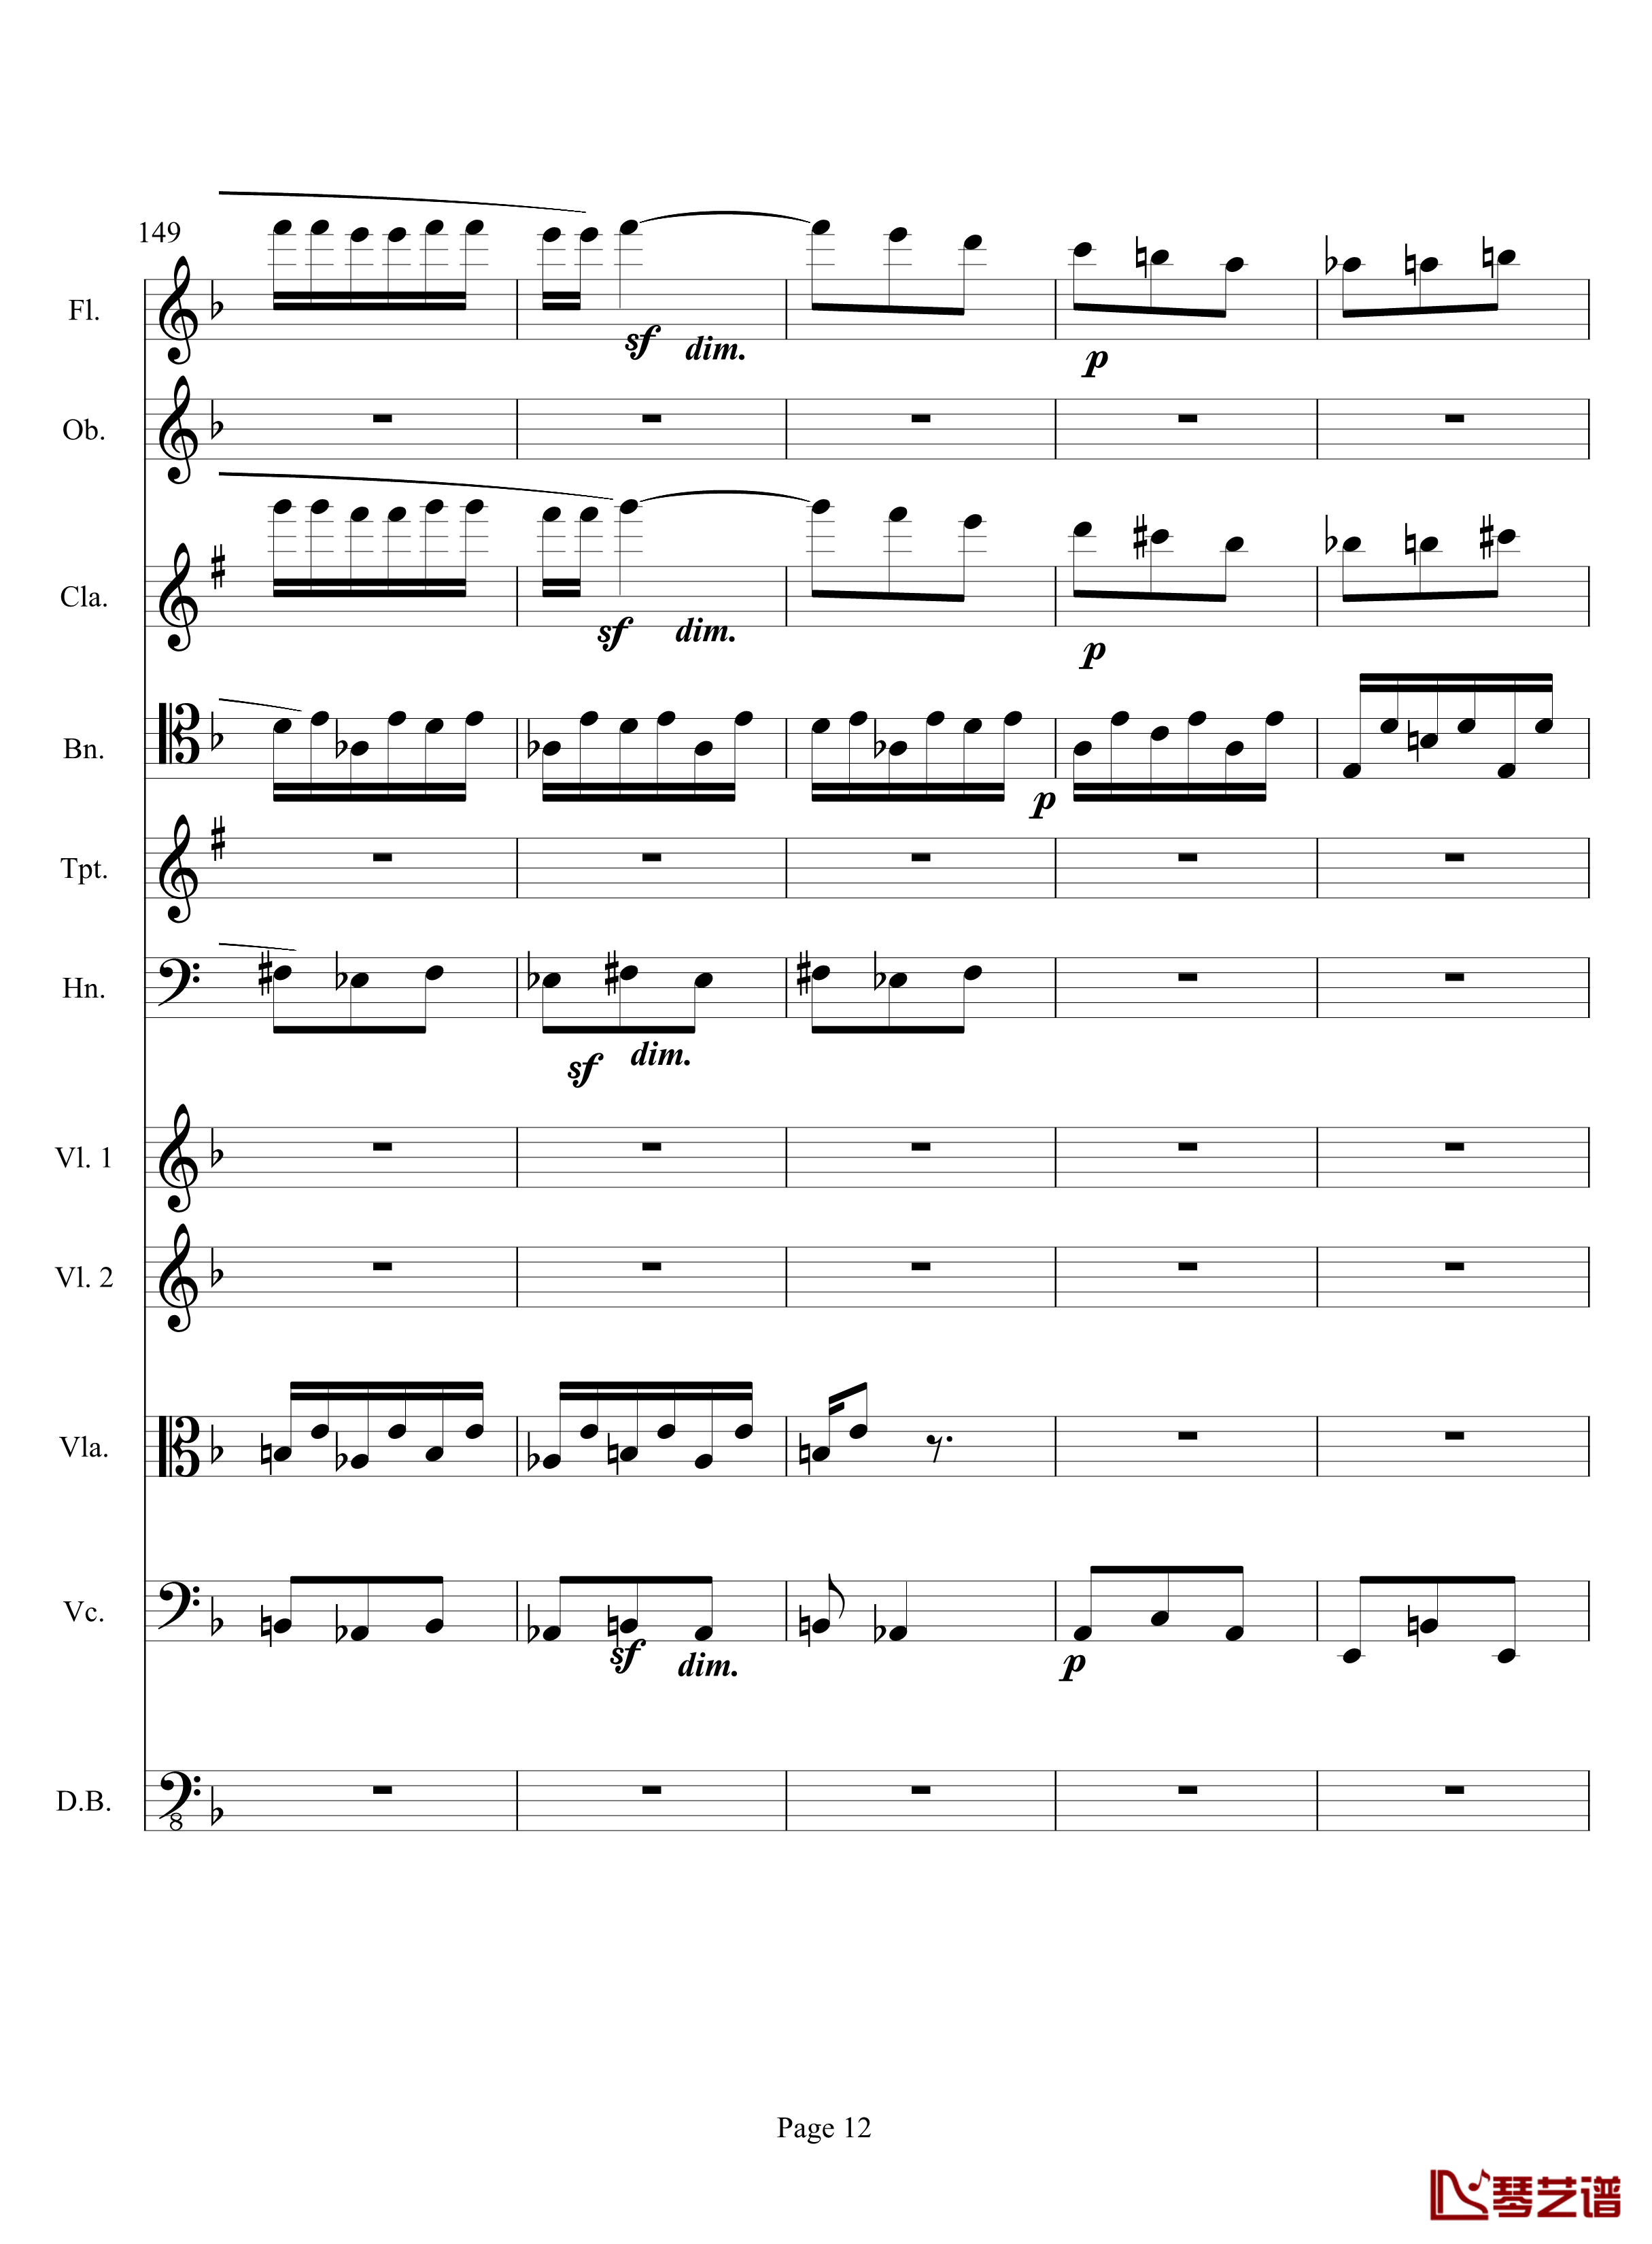 奏鸣曲之交响钢琴谱-第17首-Ⅲ-贝多芬-beethoven12